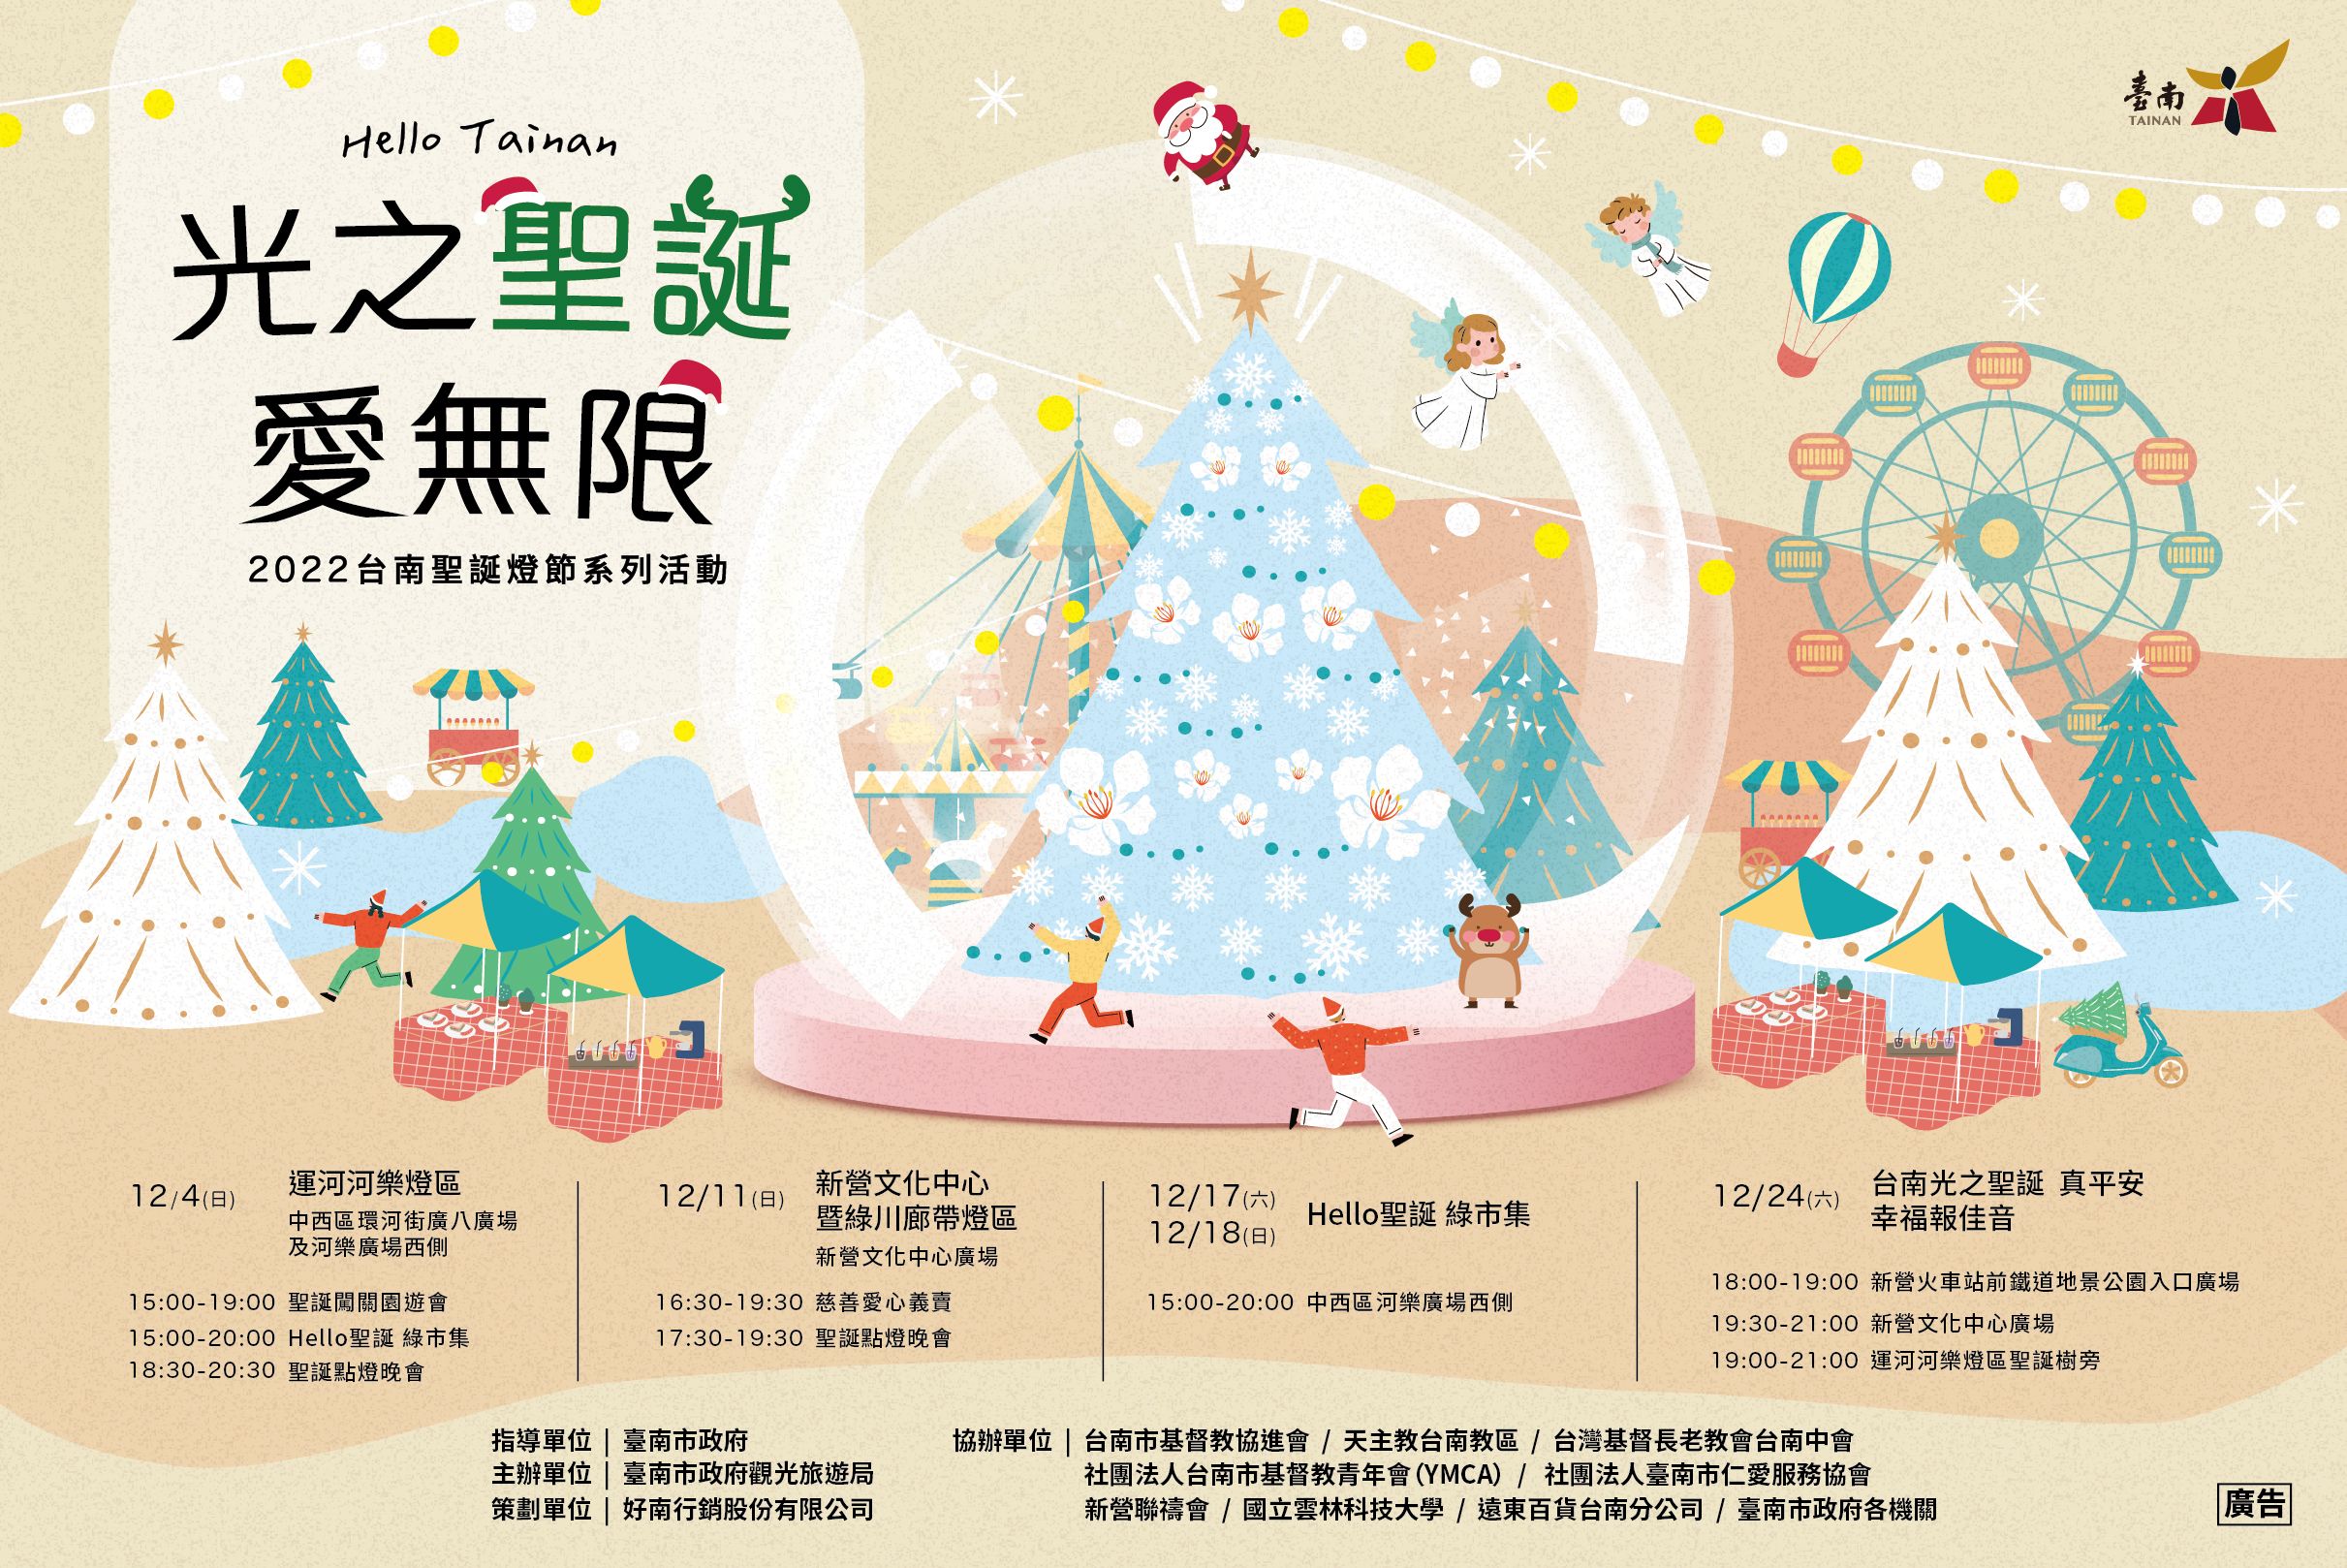 2022台南聖誕燈節HELLO聖誕綠市集   邀民共度周末歡樂時光